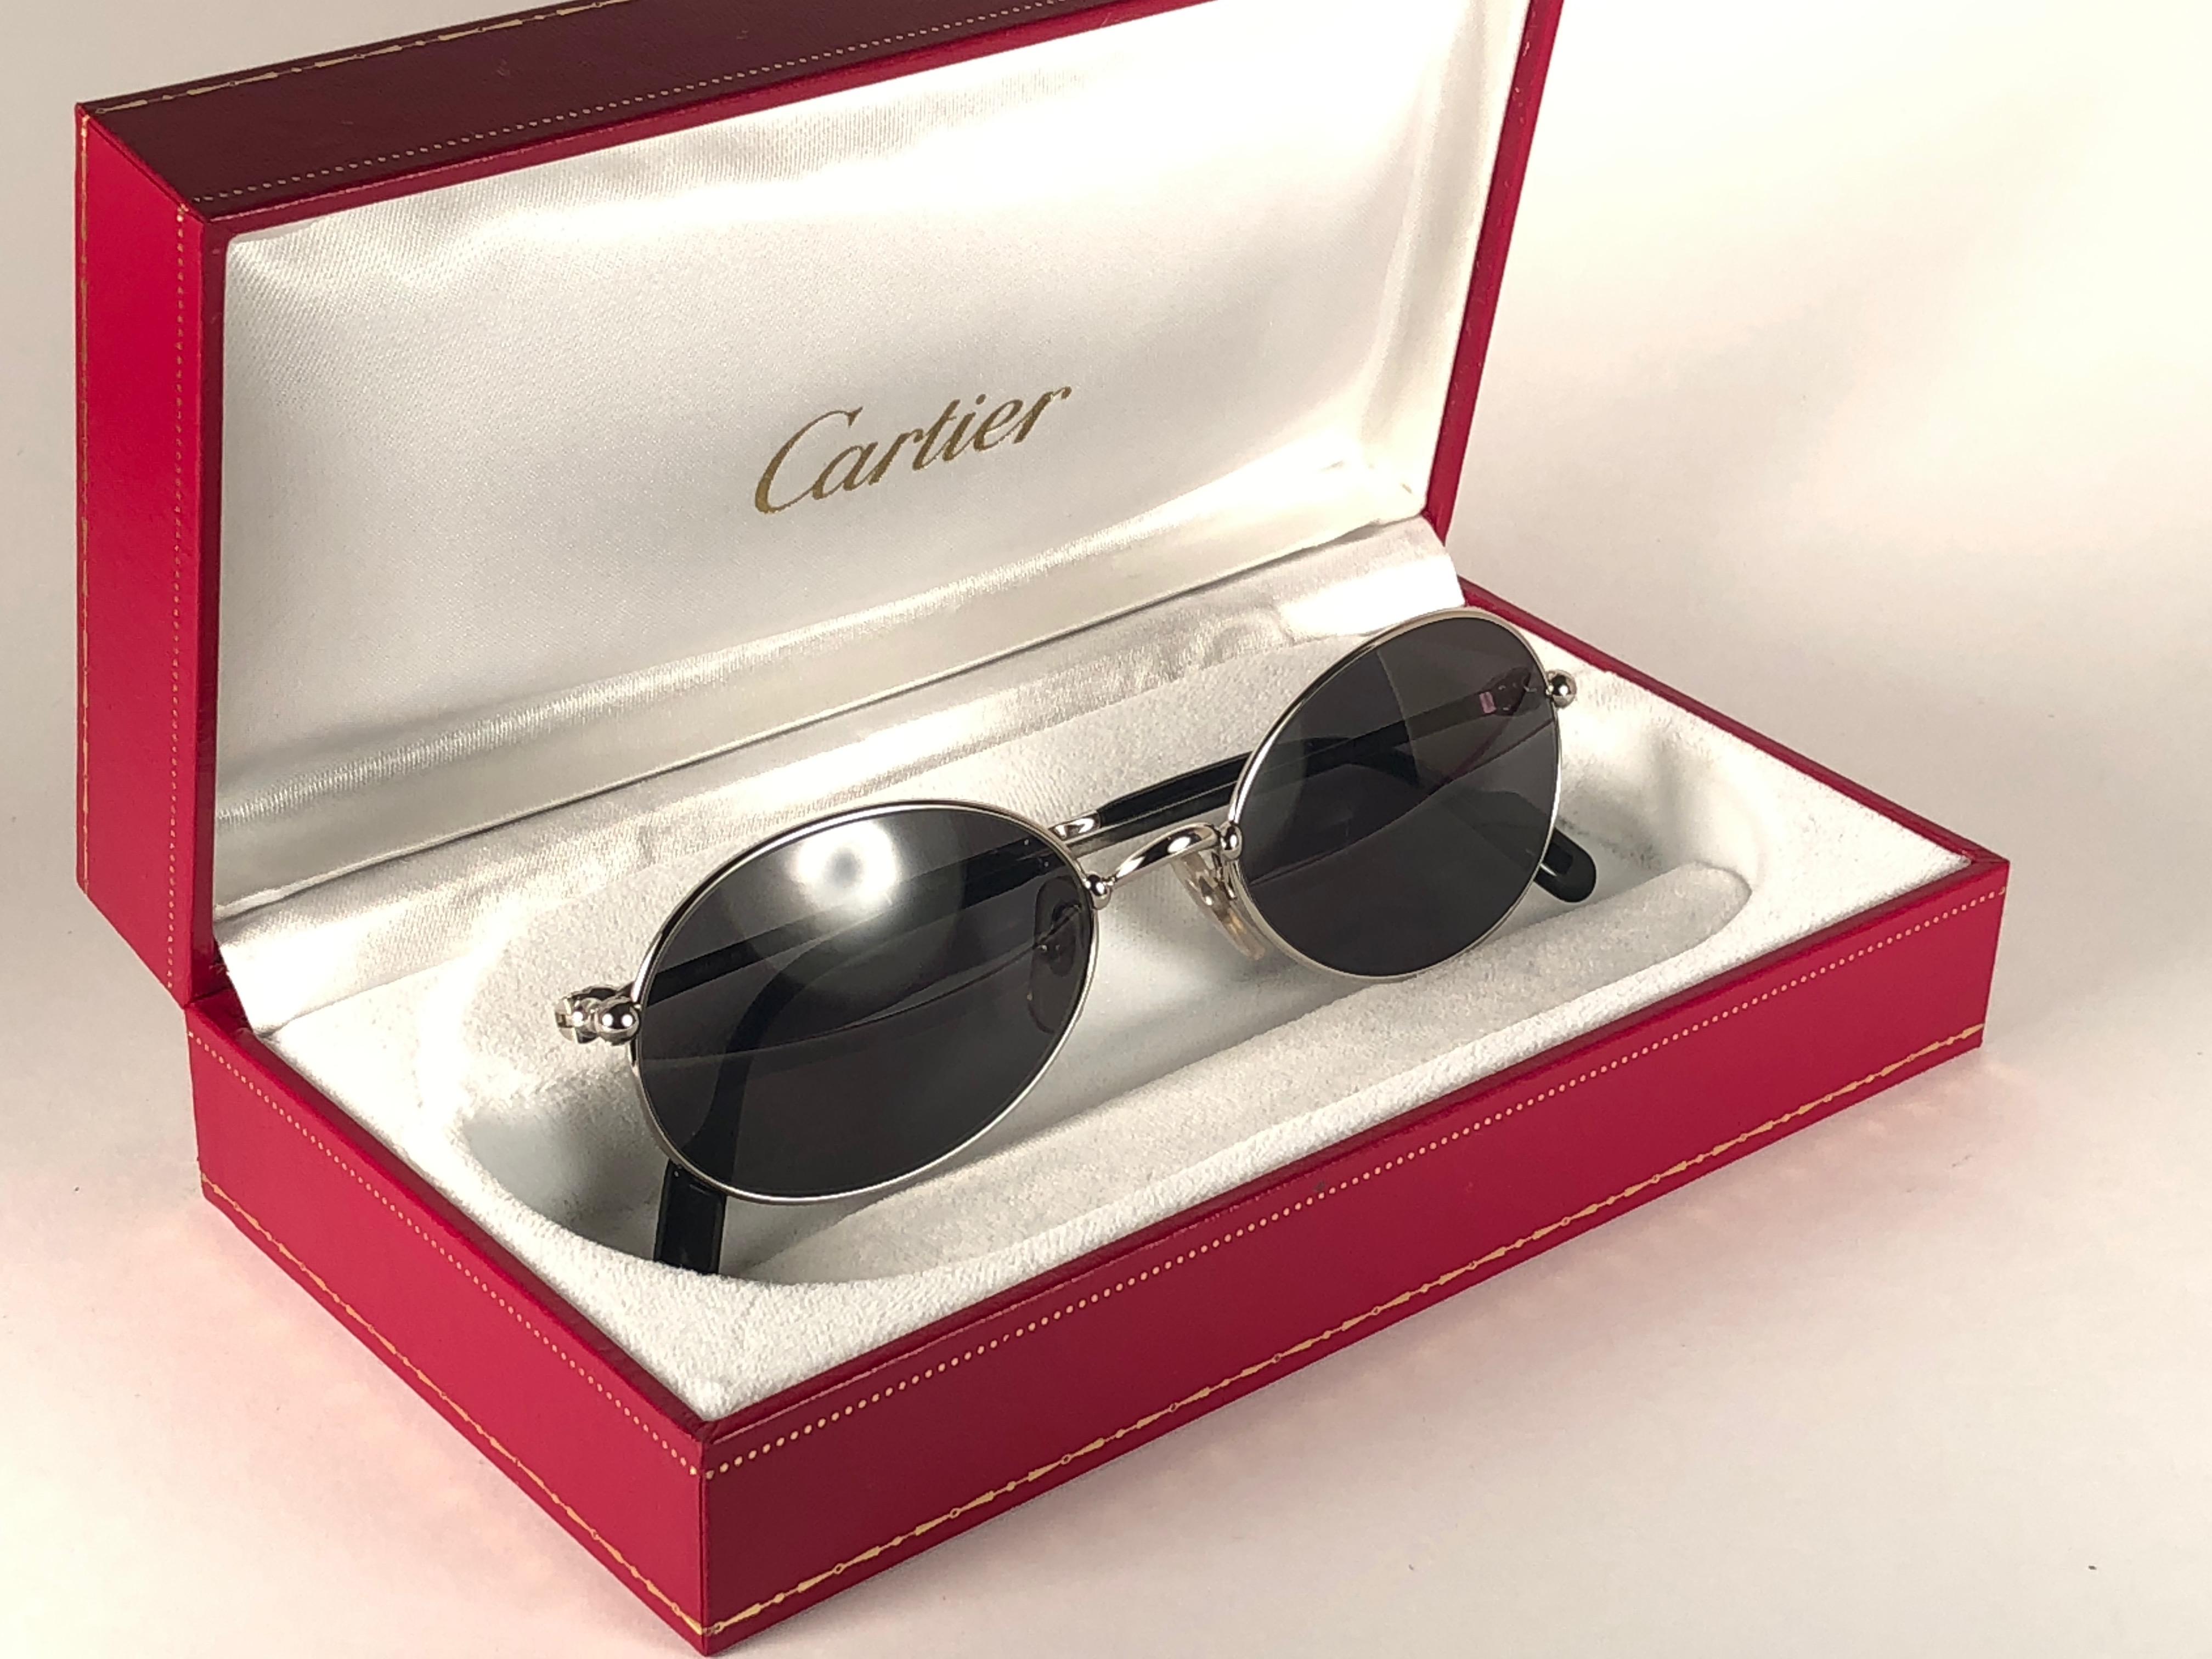 1990 Cartier Saturne Sonnenbrille mit grauen (uv-Schutz) Gläsern.  Alle Markenzeichen.  Cartier-Silberzeichen auf den Ohrpolstern.  
Sie sind wie ein Paar Juwelen auf der Nase. 
Bitte beachten Sie, dass dieses Paar fast 30 Jahre alt ist und leichte